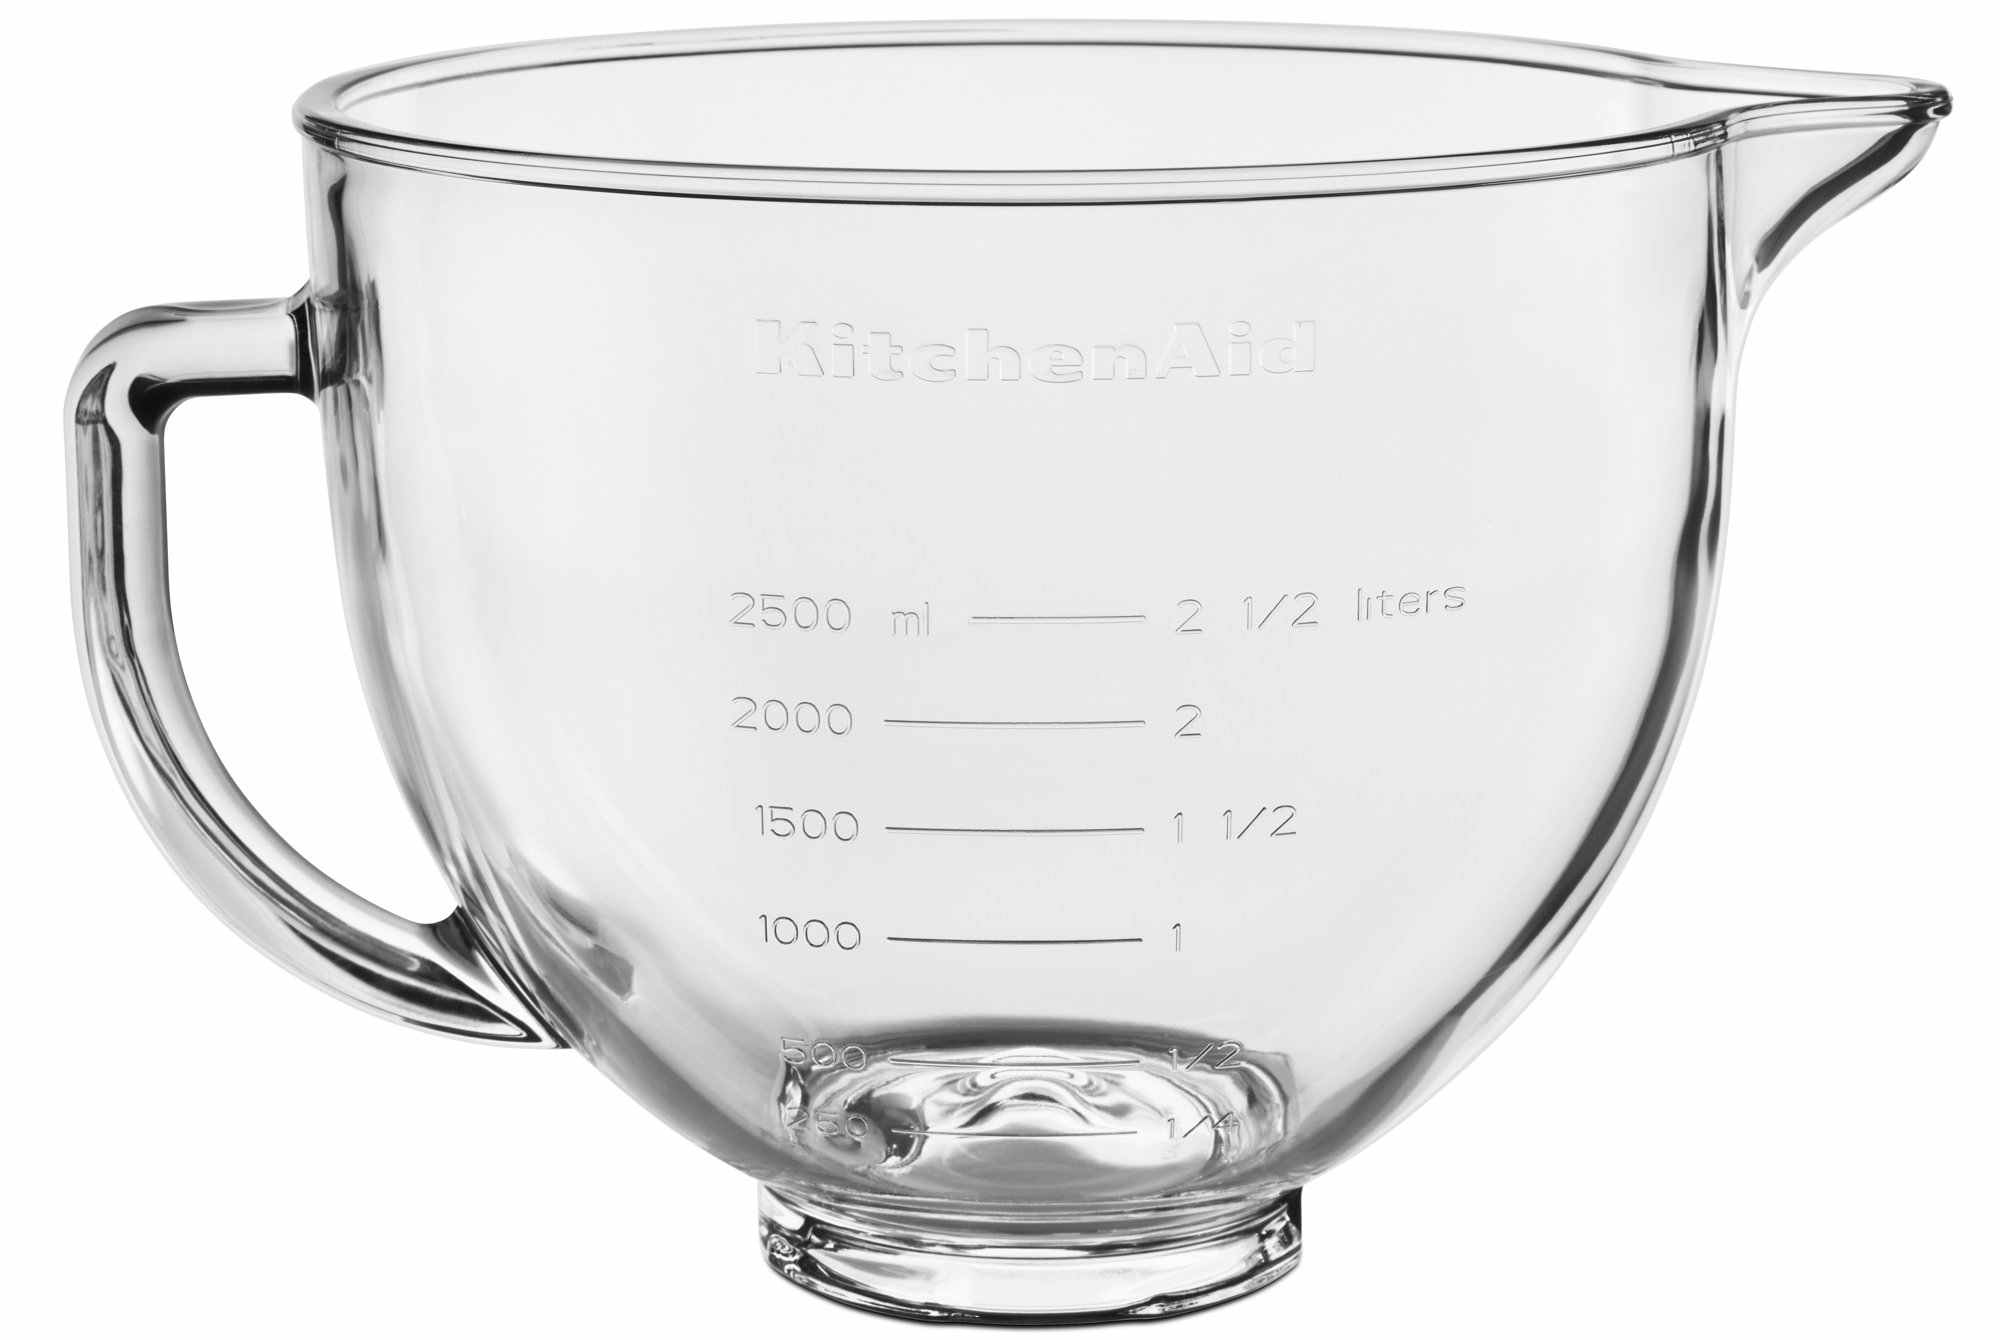 walmart-kitchenaid-5-quart-glass-bowl-2021